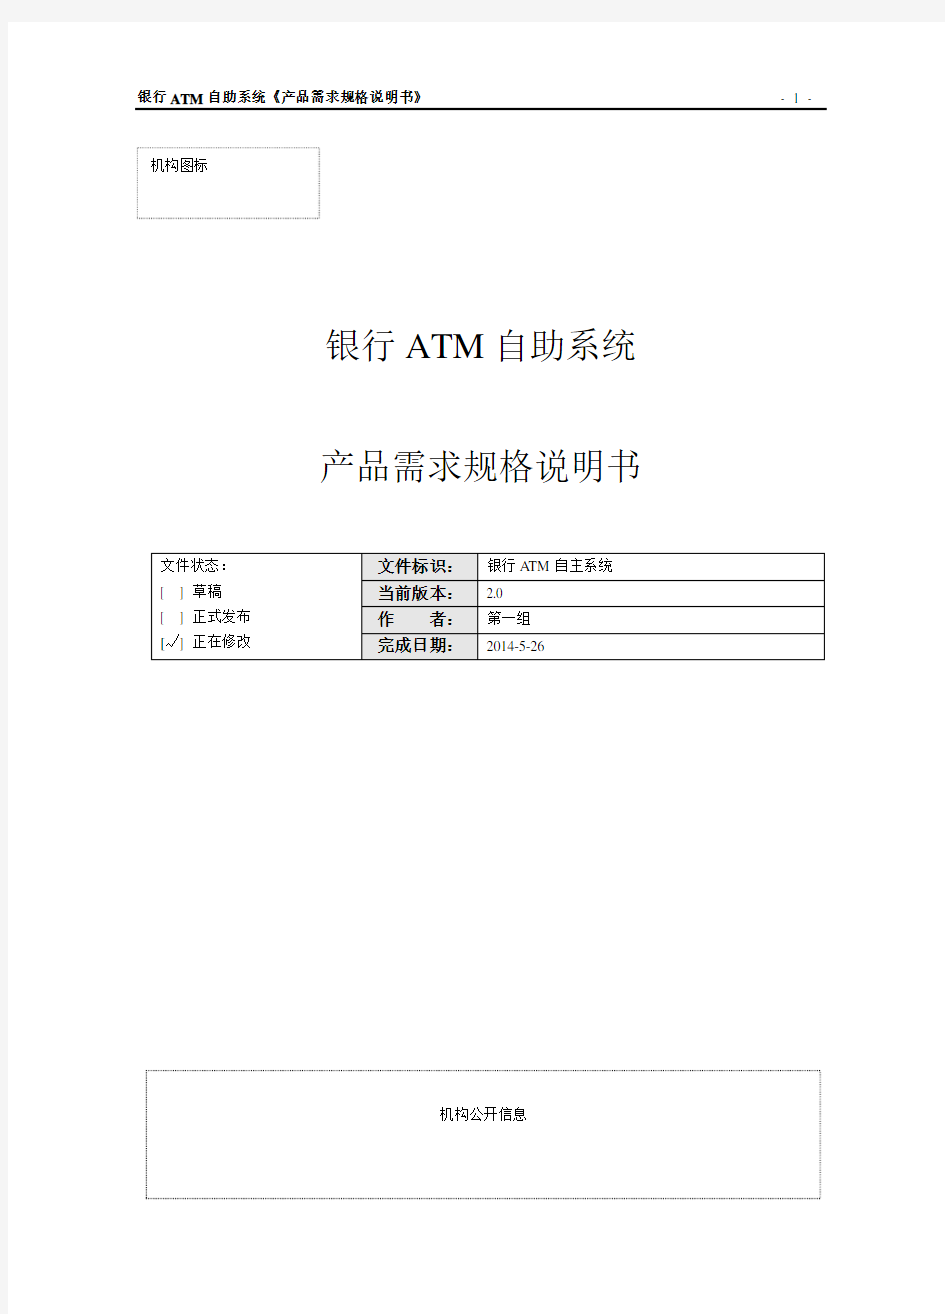 银行ATM自助系统需求规格说明书